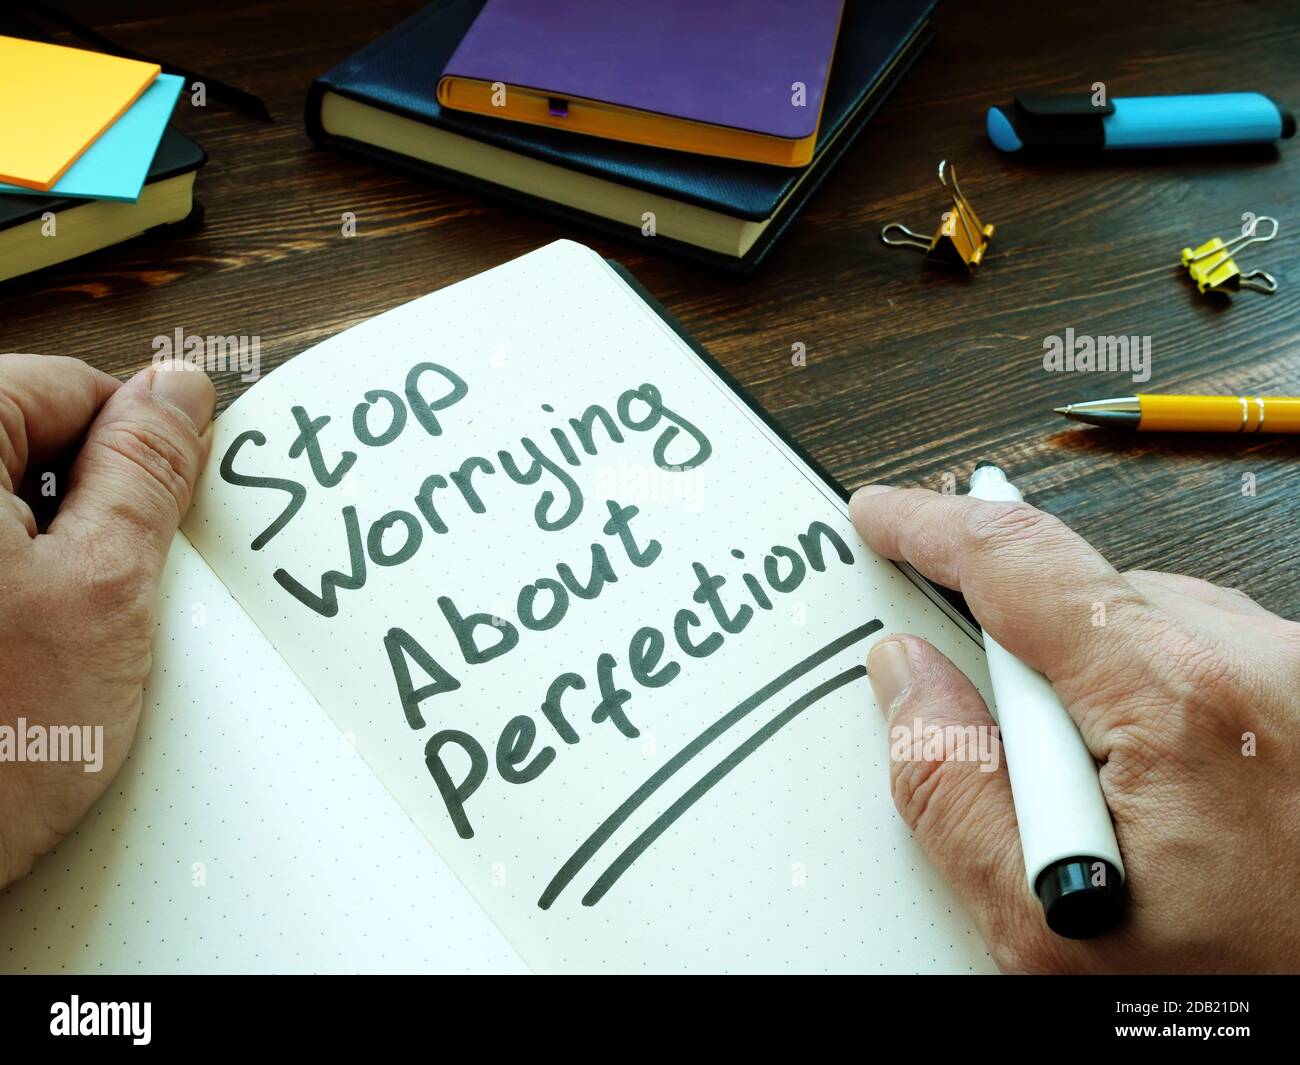 Hört auf, sich Gedanken über Perfektion zu machen, schrieb der Mann. Stockfoto